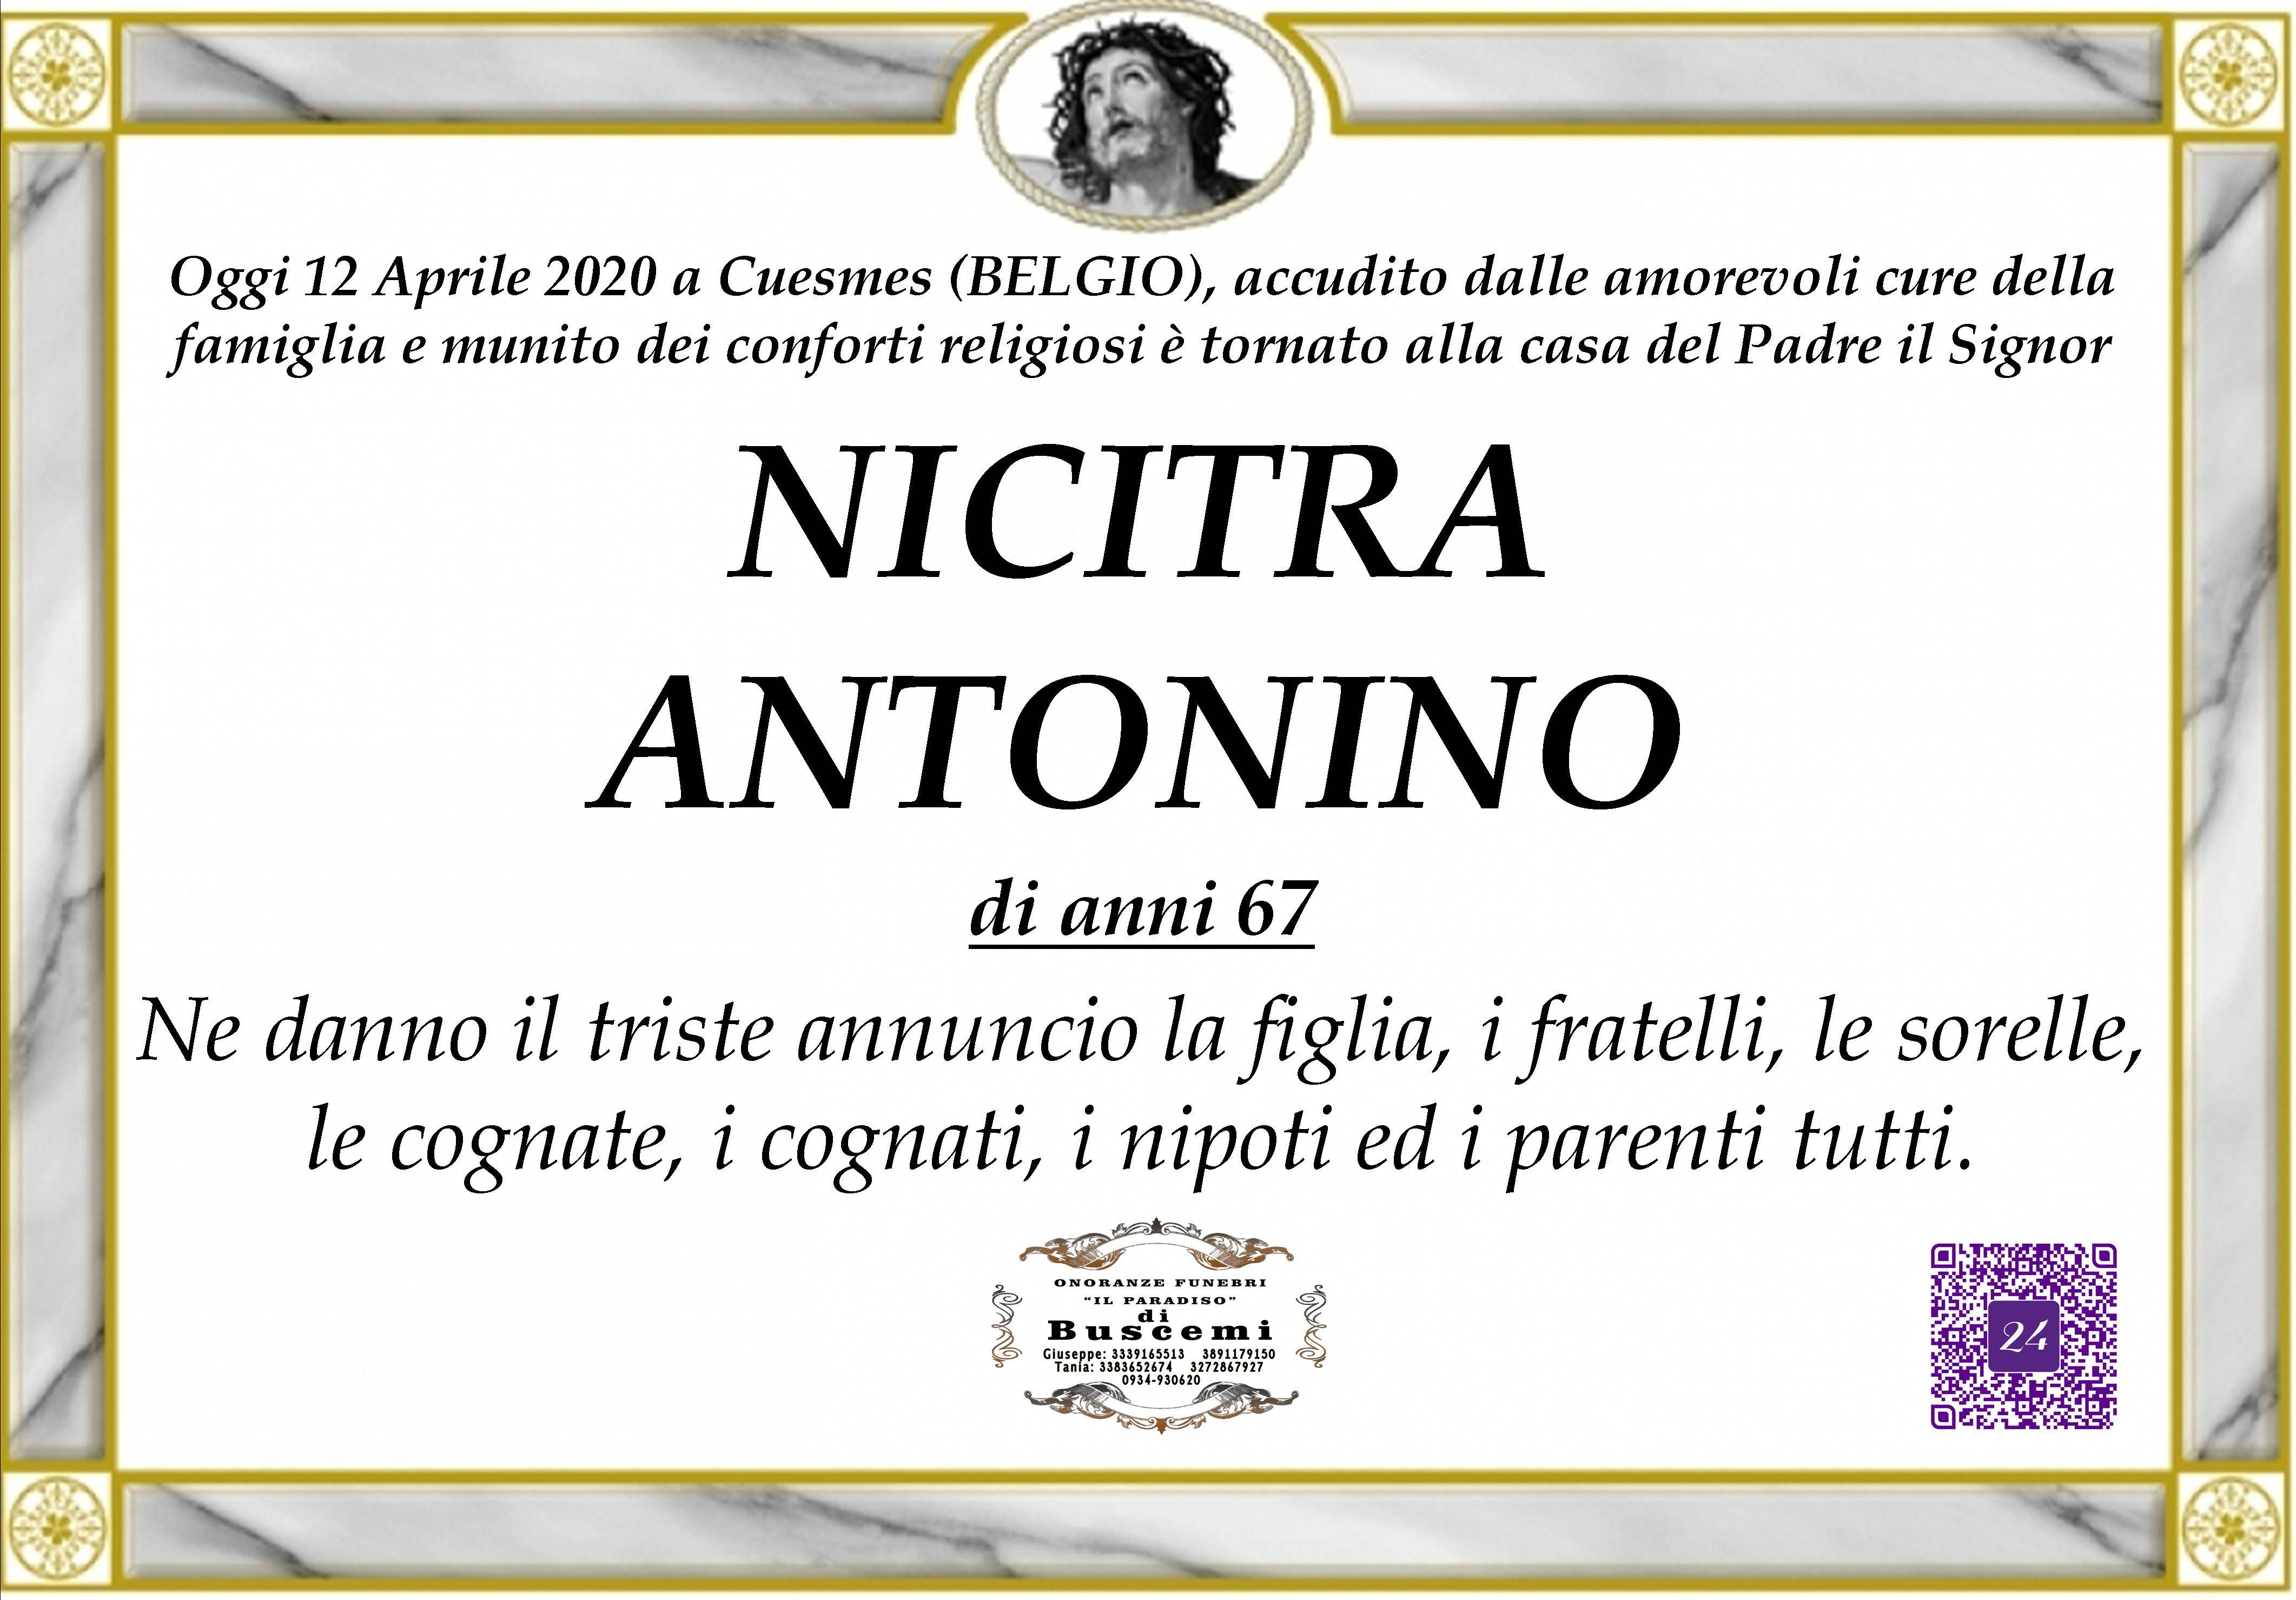 Antonino Nicitra